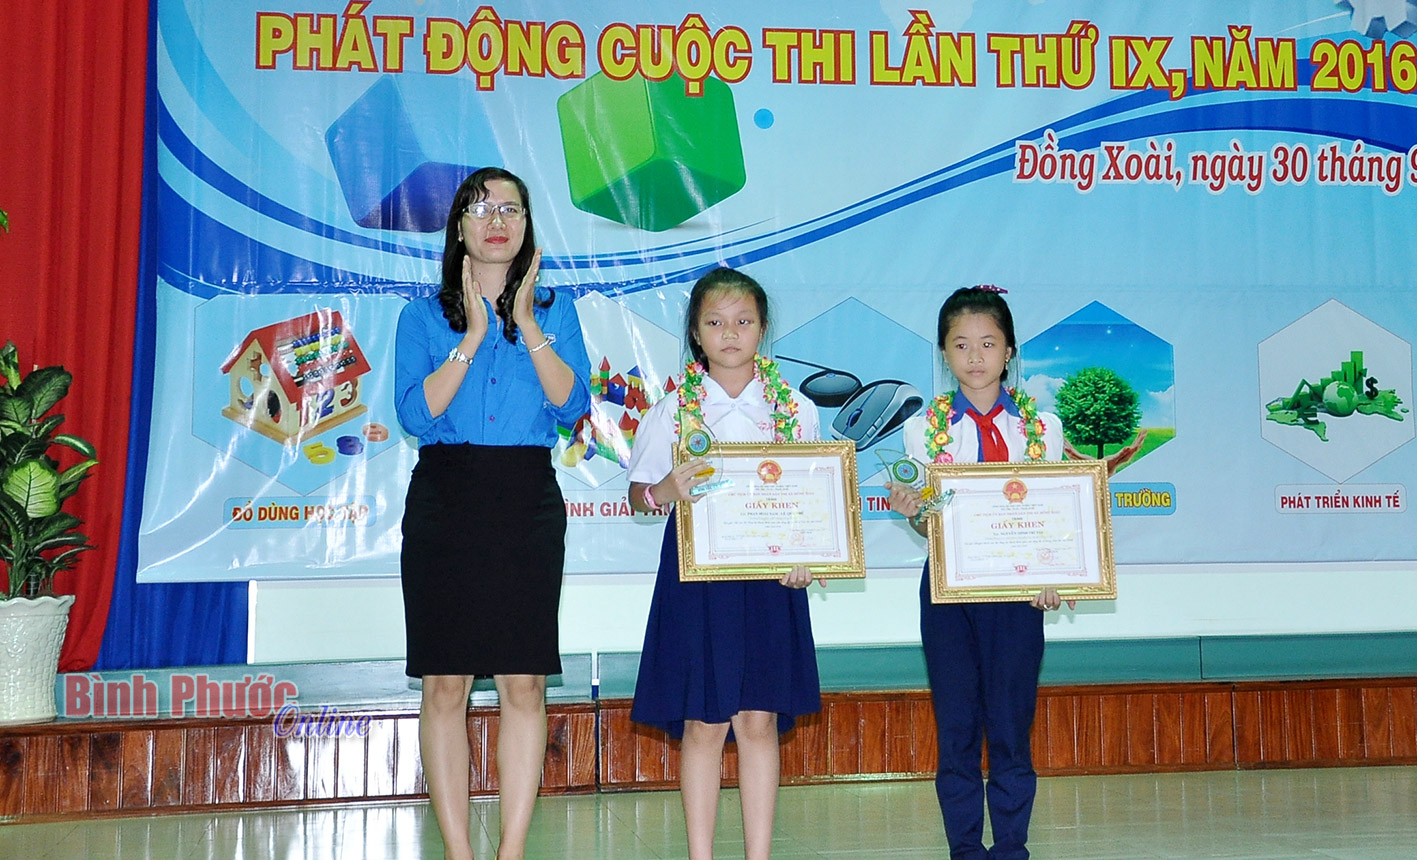 Phó bí thư Thị đoàn Đồng Xoài Nguyễn Thị Hằng trao giải cho thí sinh nhỏ tuổi nhất và thí sinh có sản phẩm đẹp nhất 